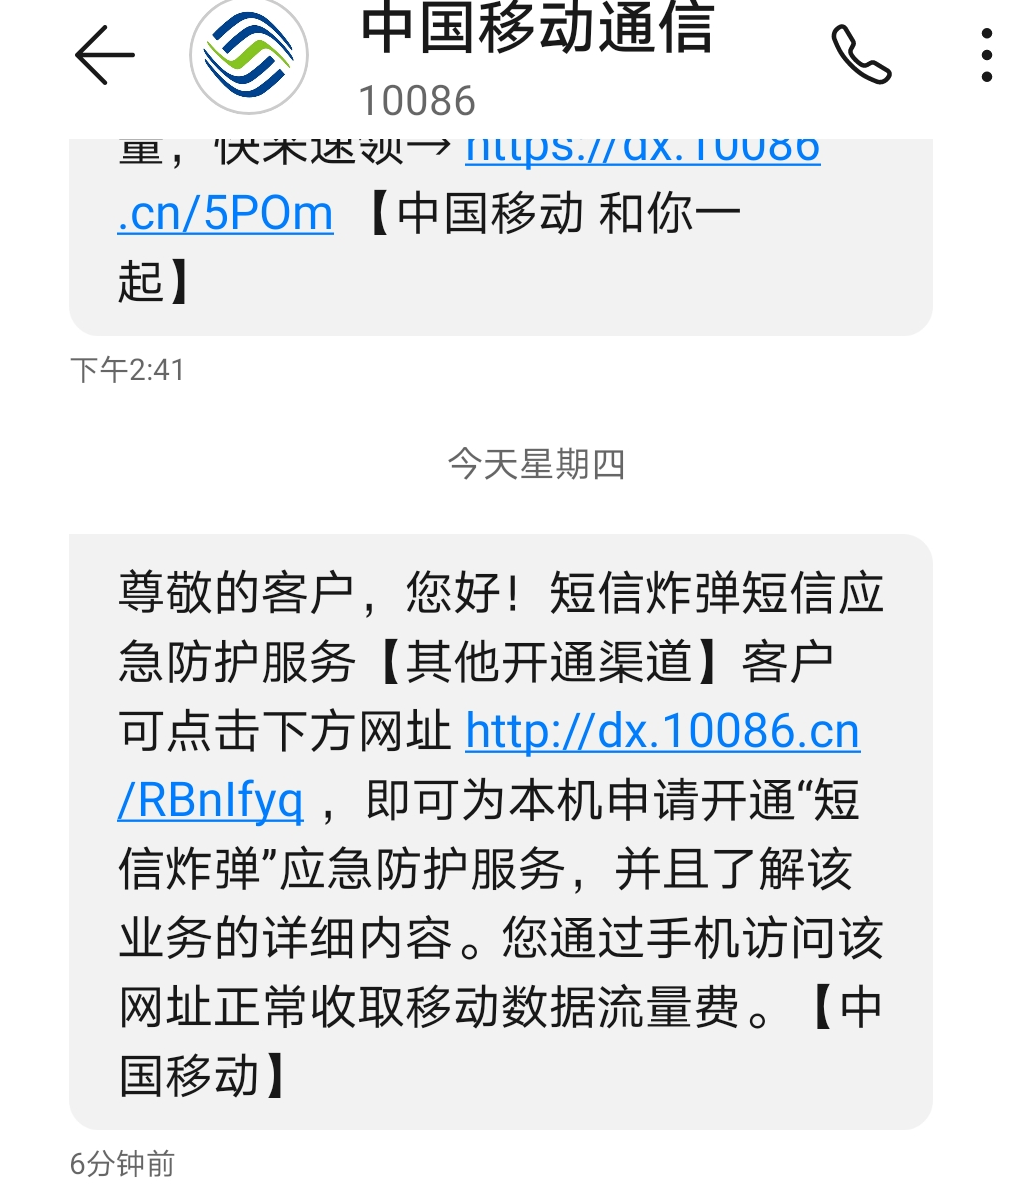 中国移动向用户提供的“短信炸弹”应急防护服务。手机截图